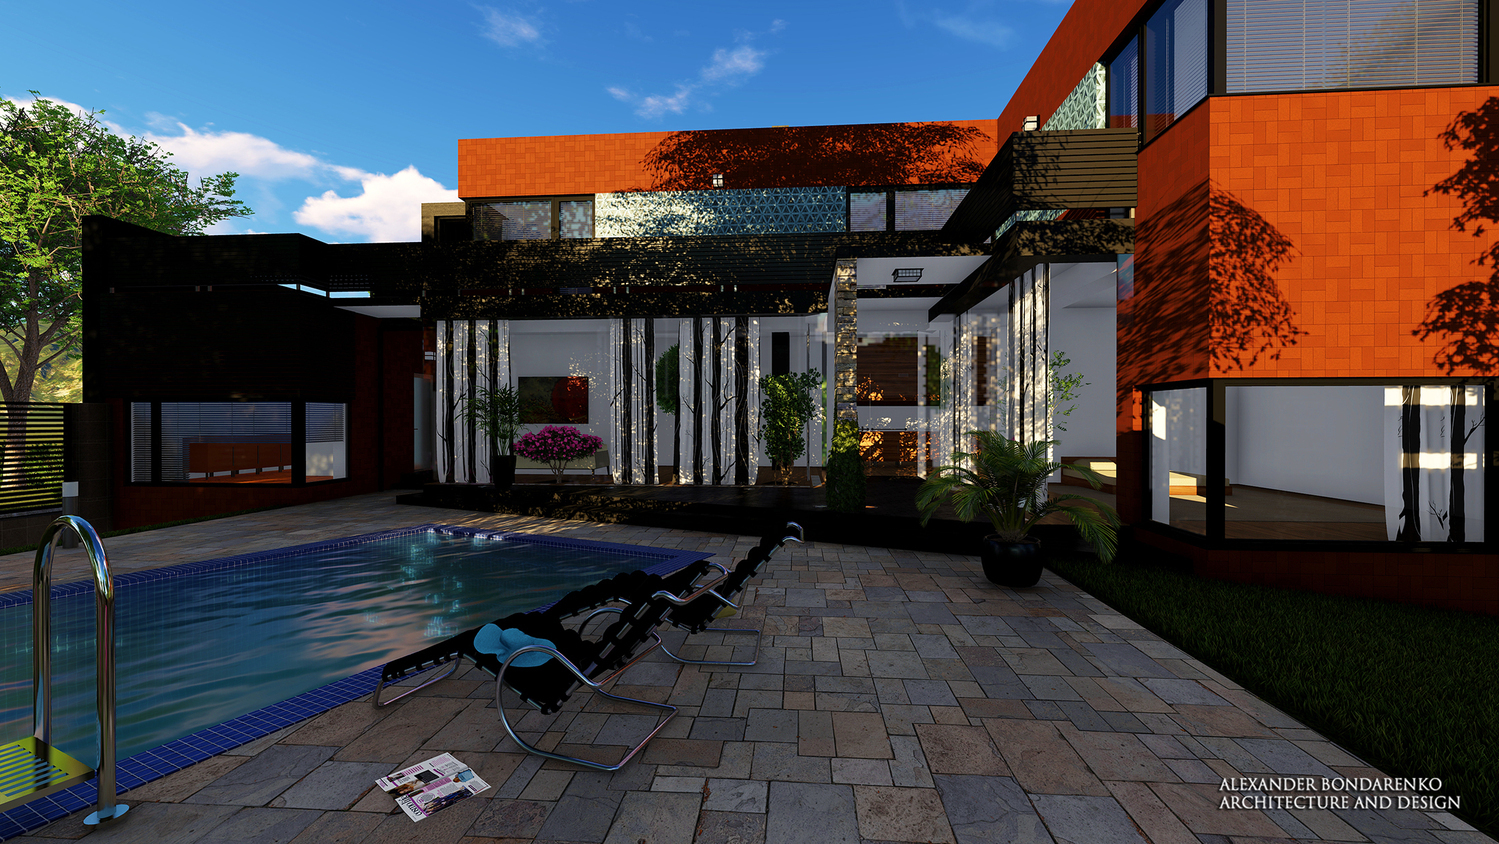 проект дома с бассейном и ленточным остеклением фасада. фото